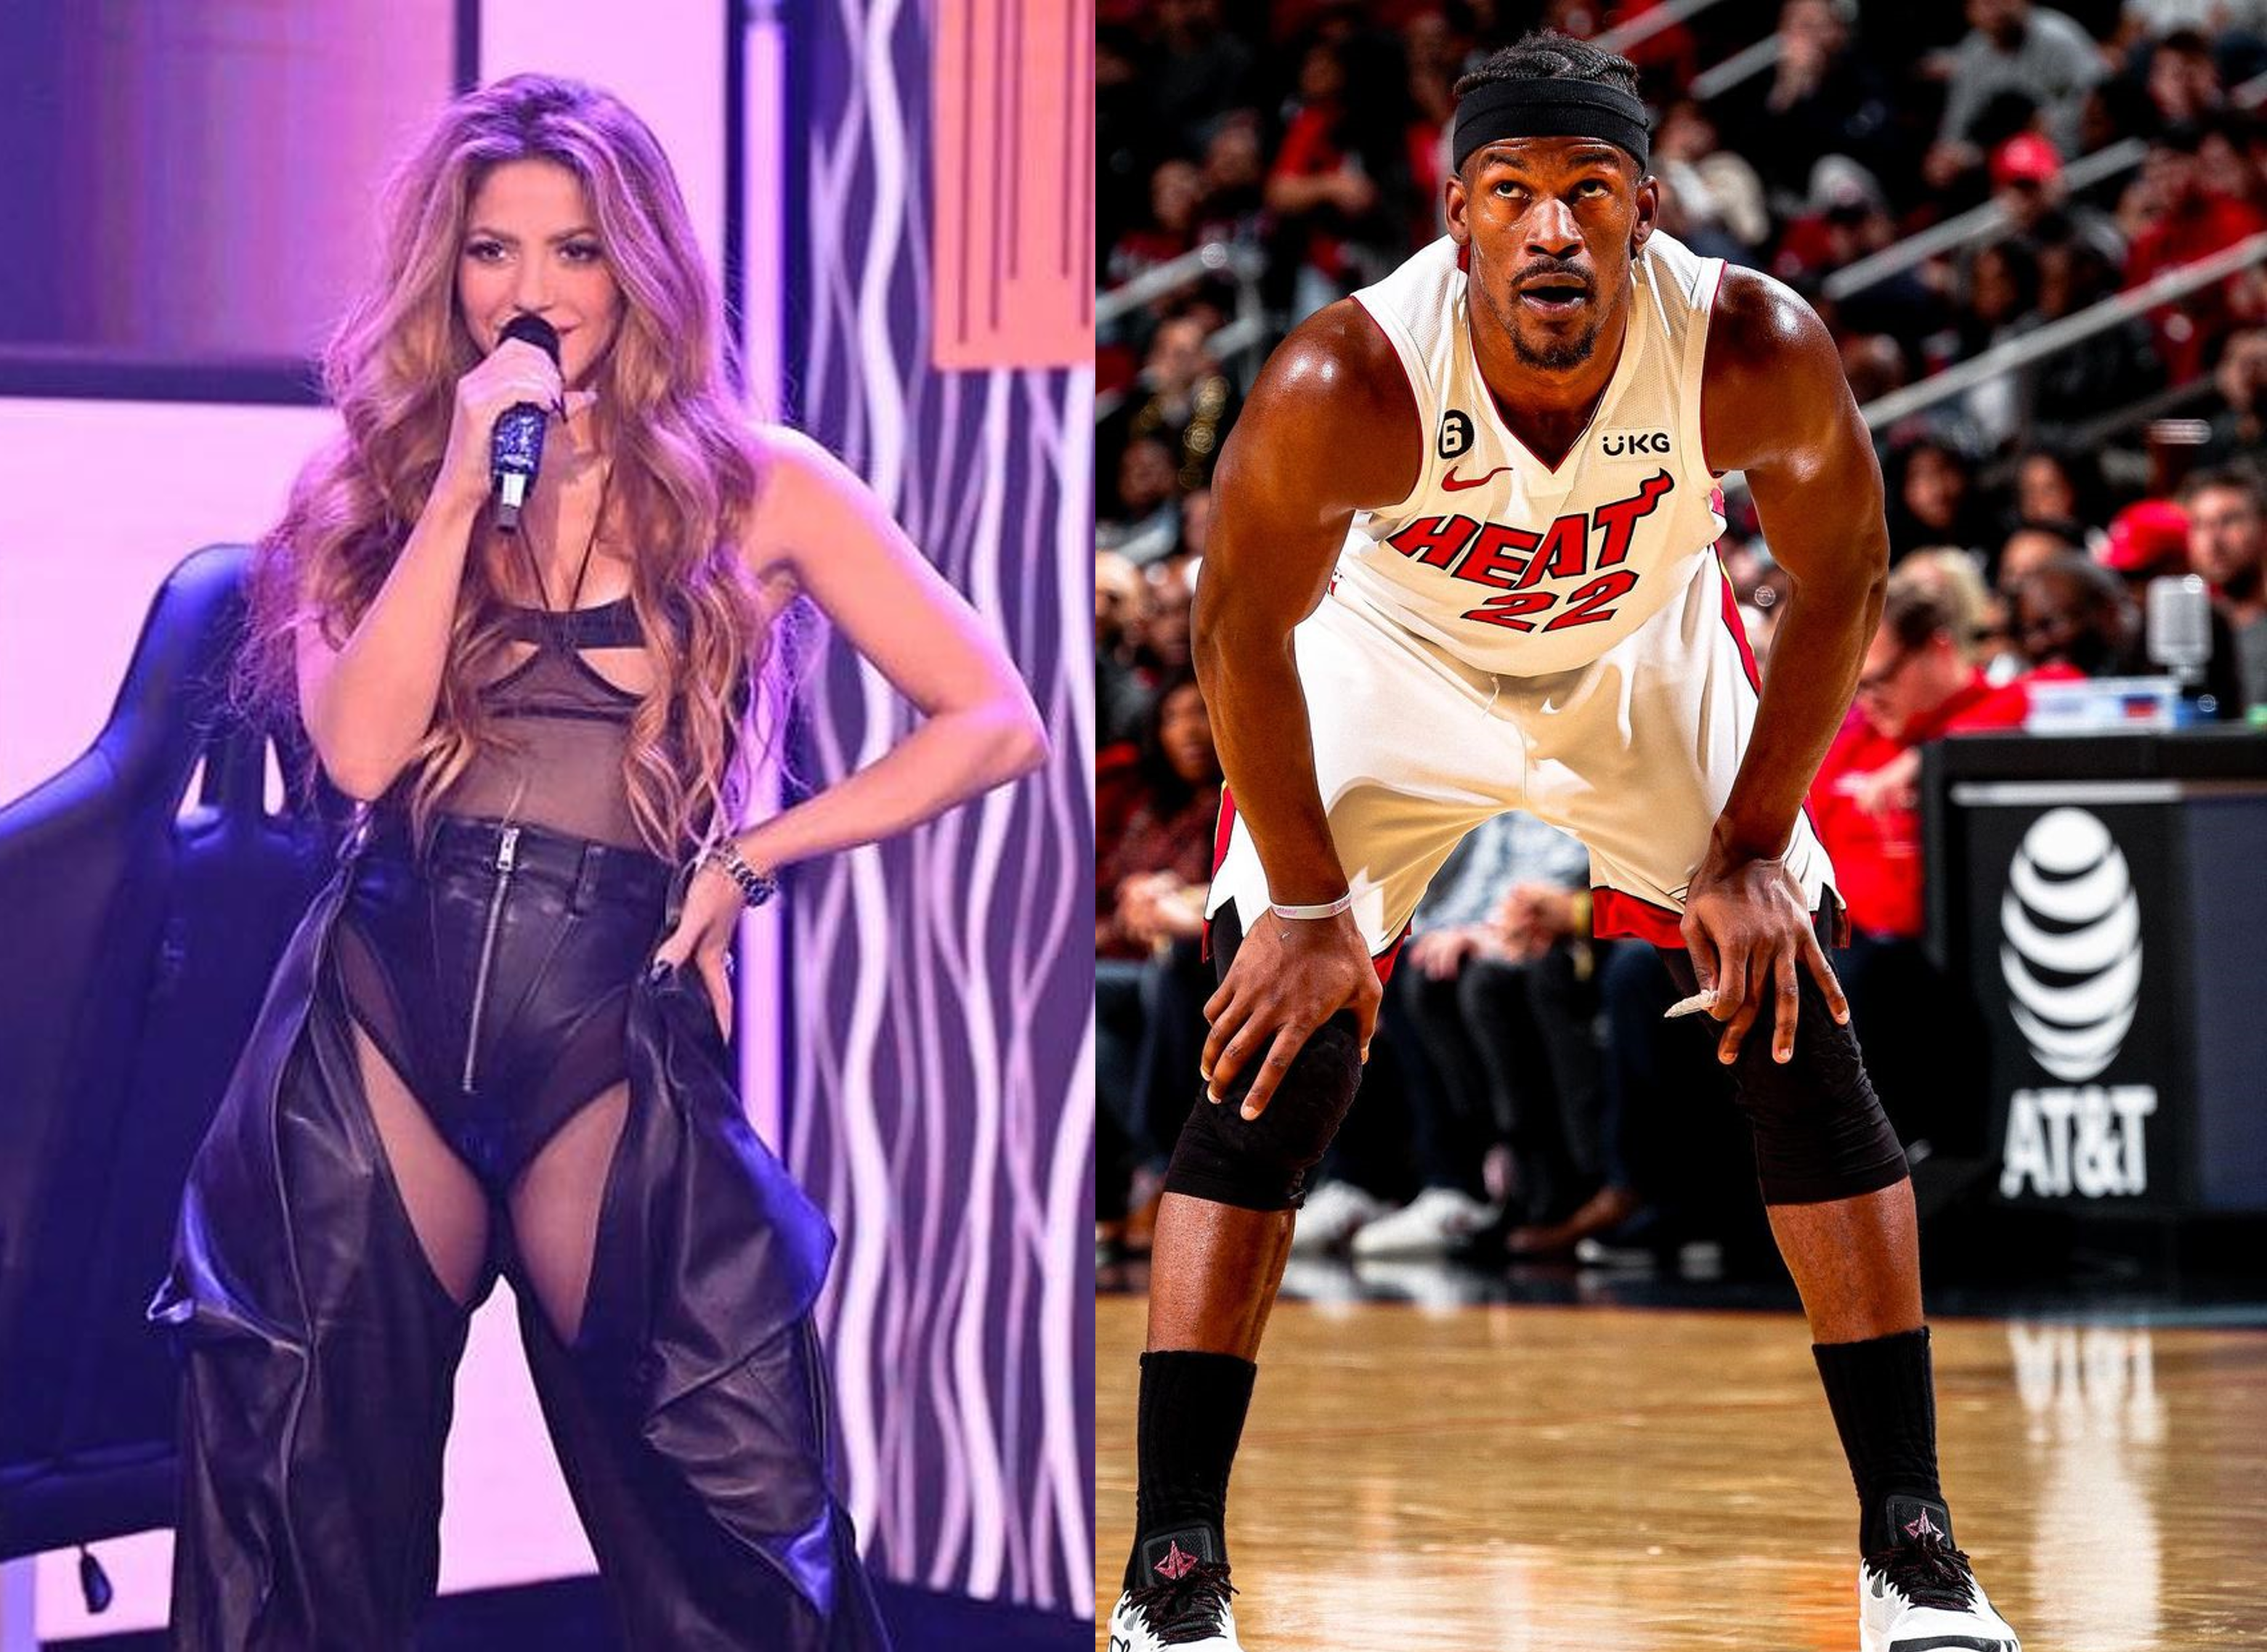 ¿Enamorada? Más señales sobre una relación de Shakira y jugador de la NBA